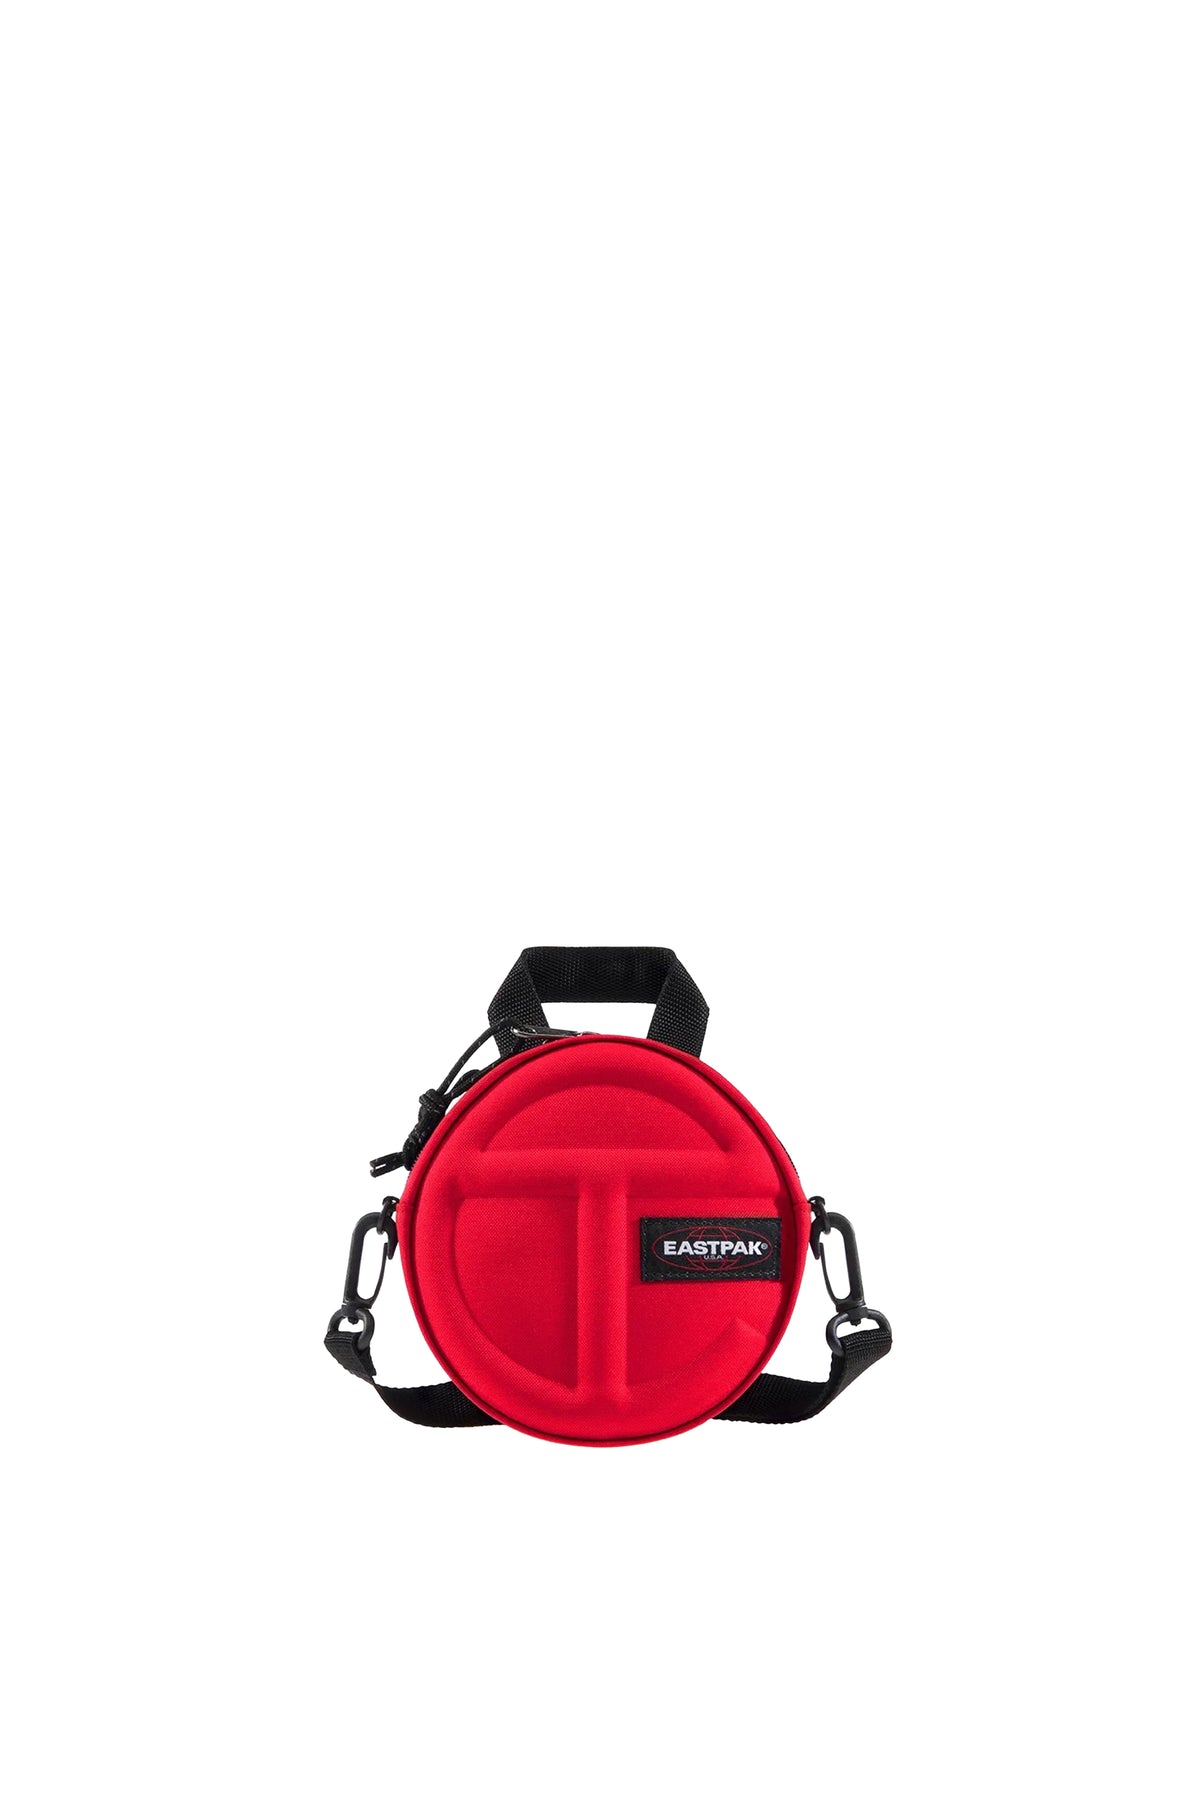 TELFAR × EASTPAK TELFAR CIRCLE BAG / TELFAR RED